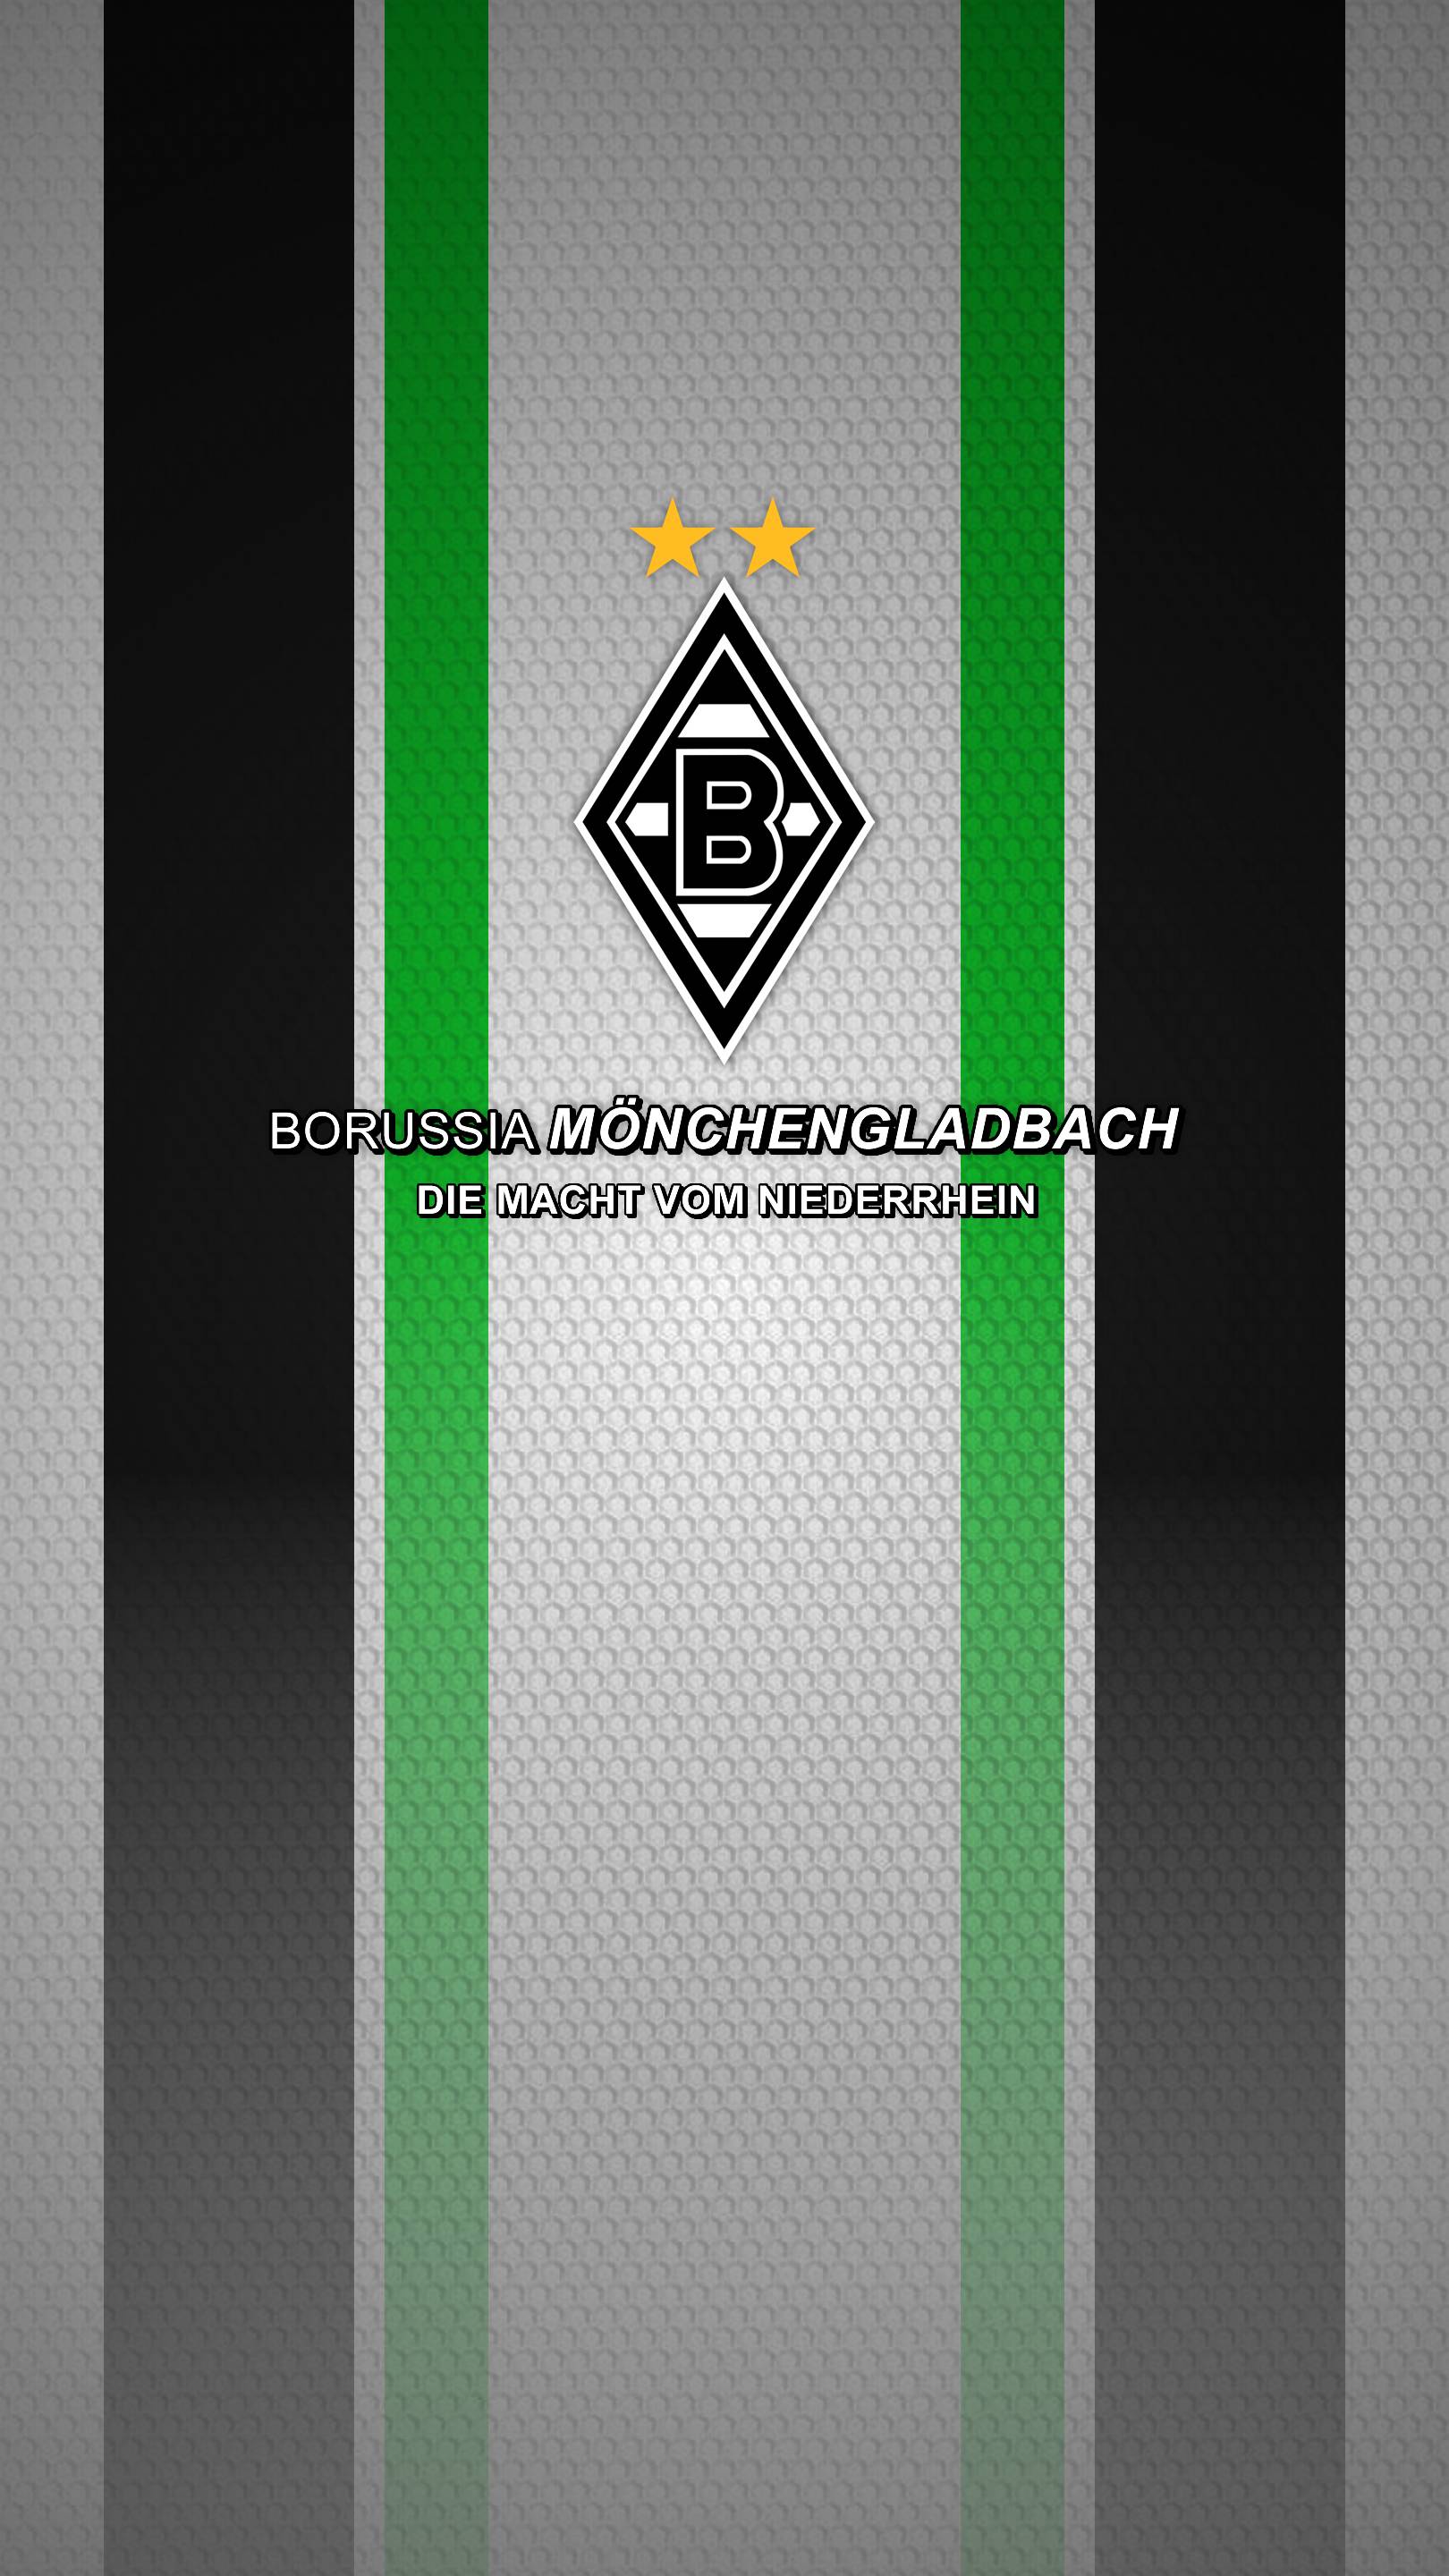 Smartphone Borussia Monchengladbach Wallpaper. Full HD Picture